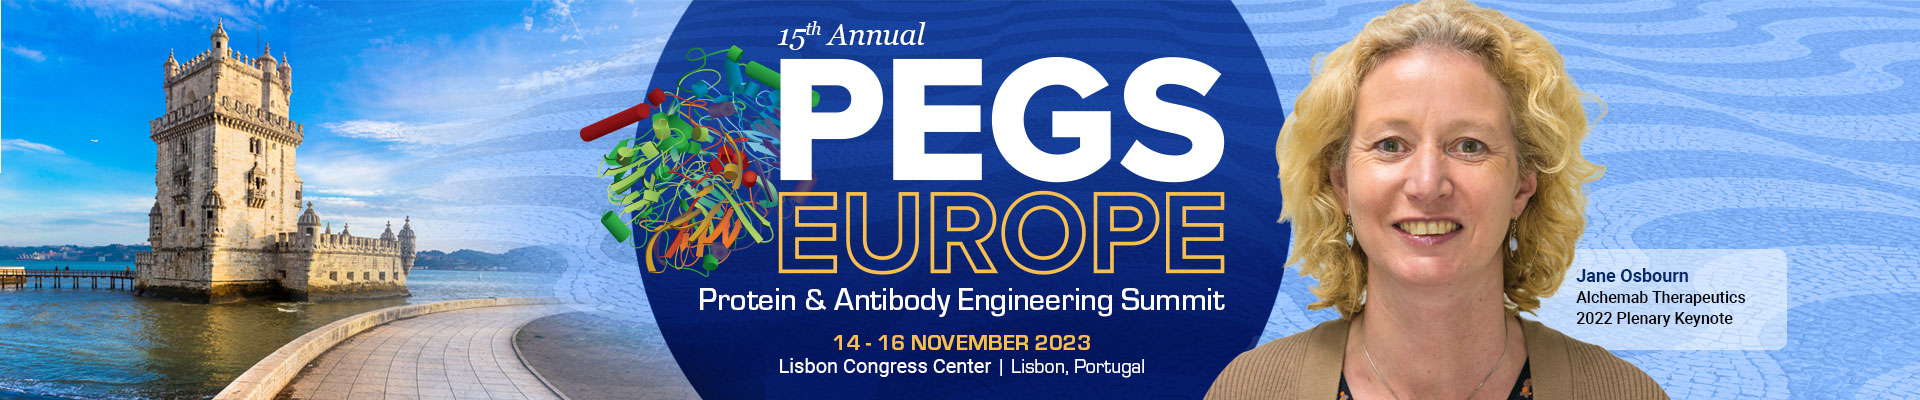 PEGS Summit Europe - 2023